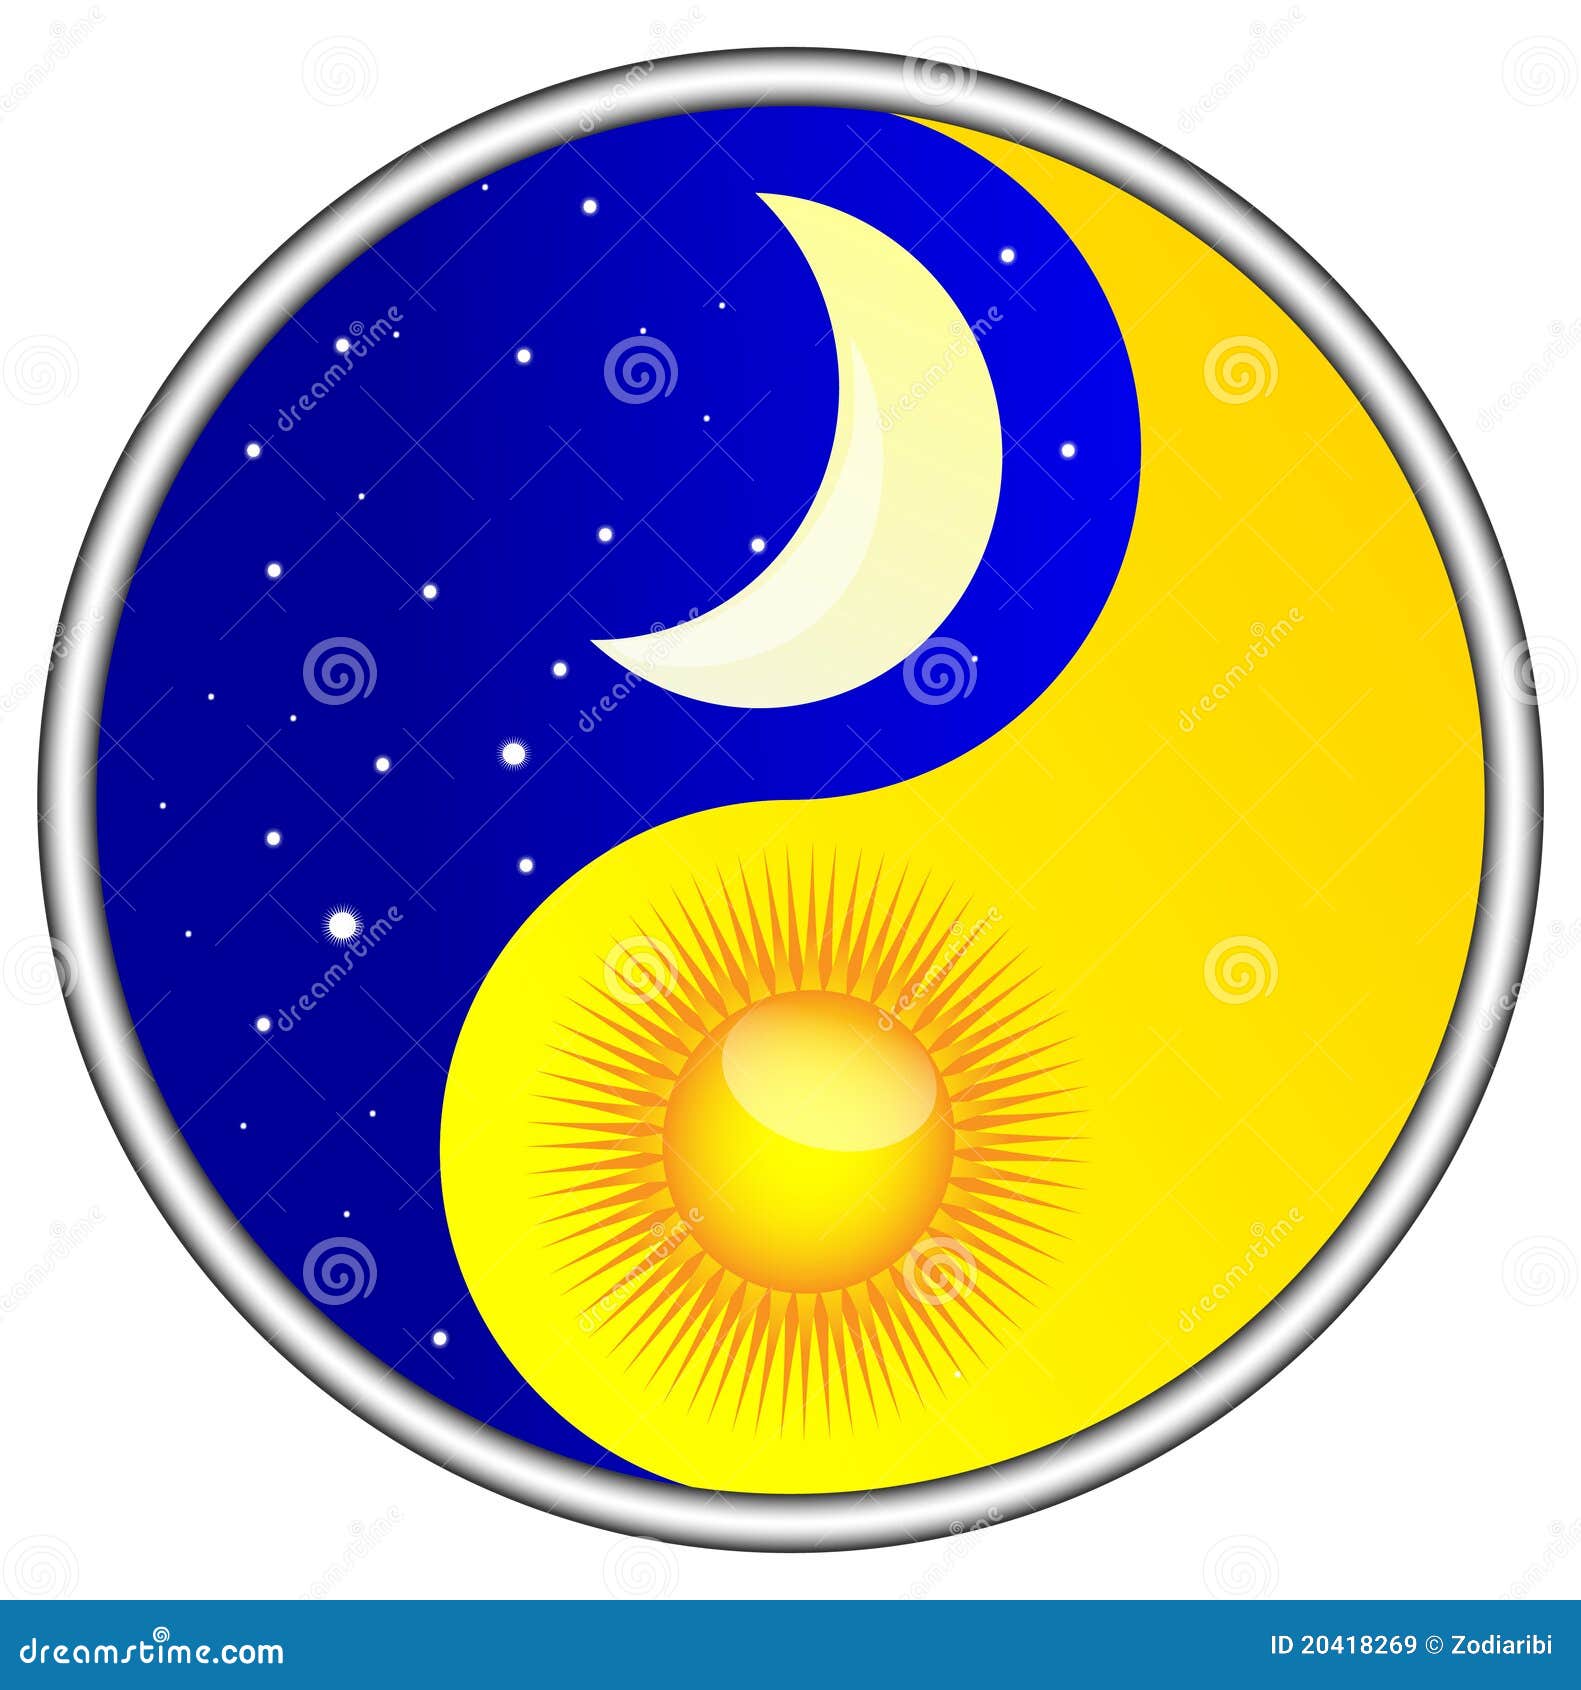 Jour et nuit yin yang illustration de vecteur ...